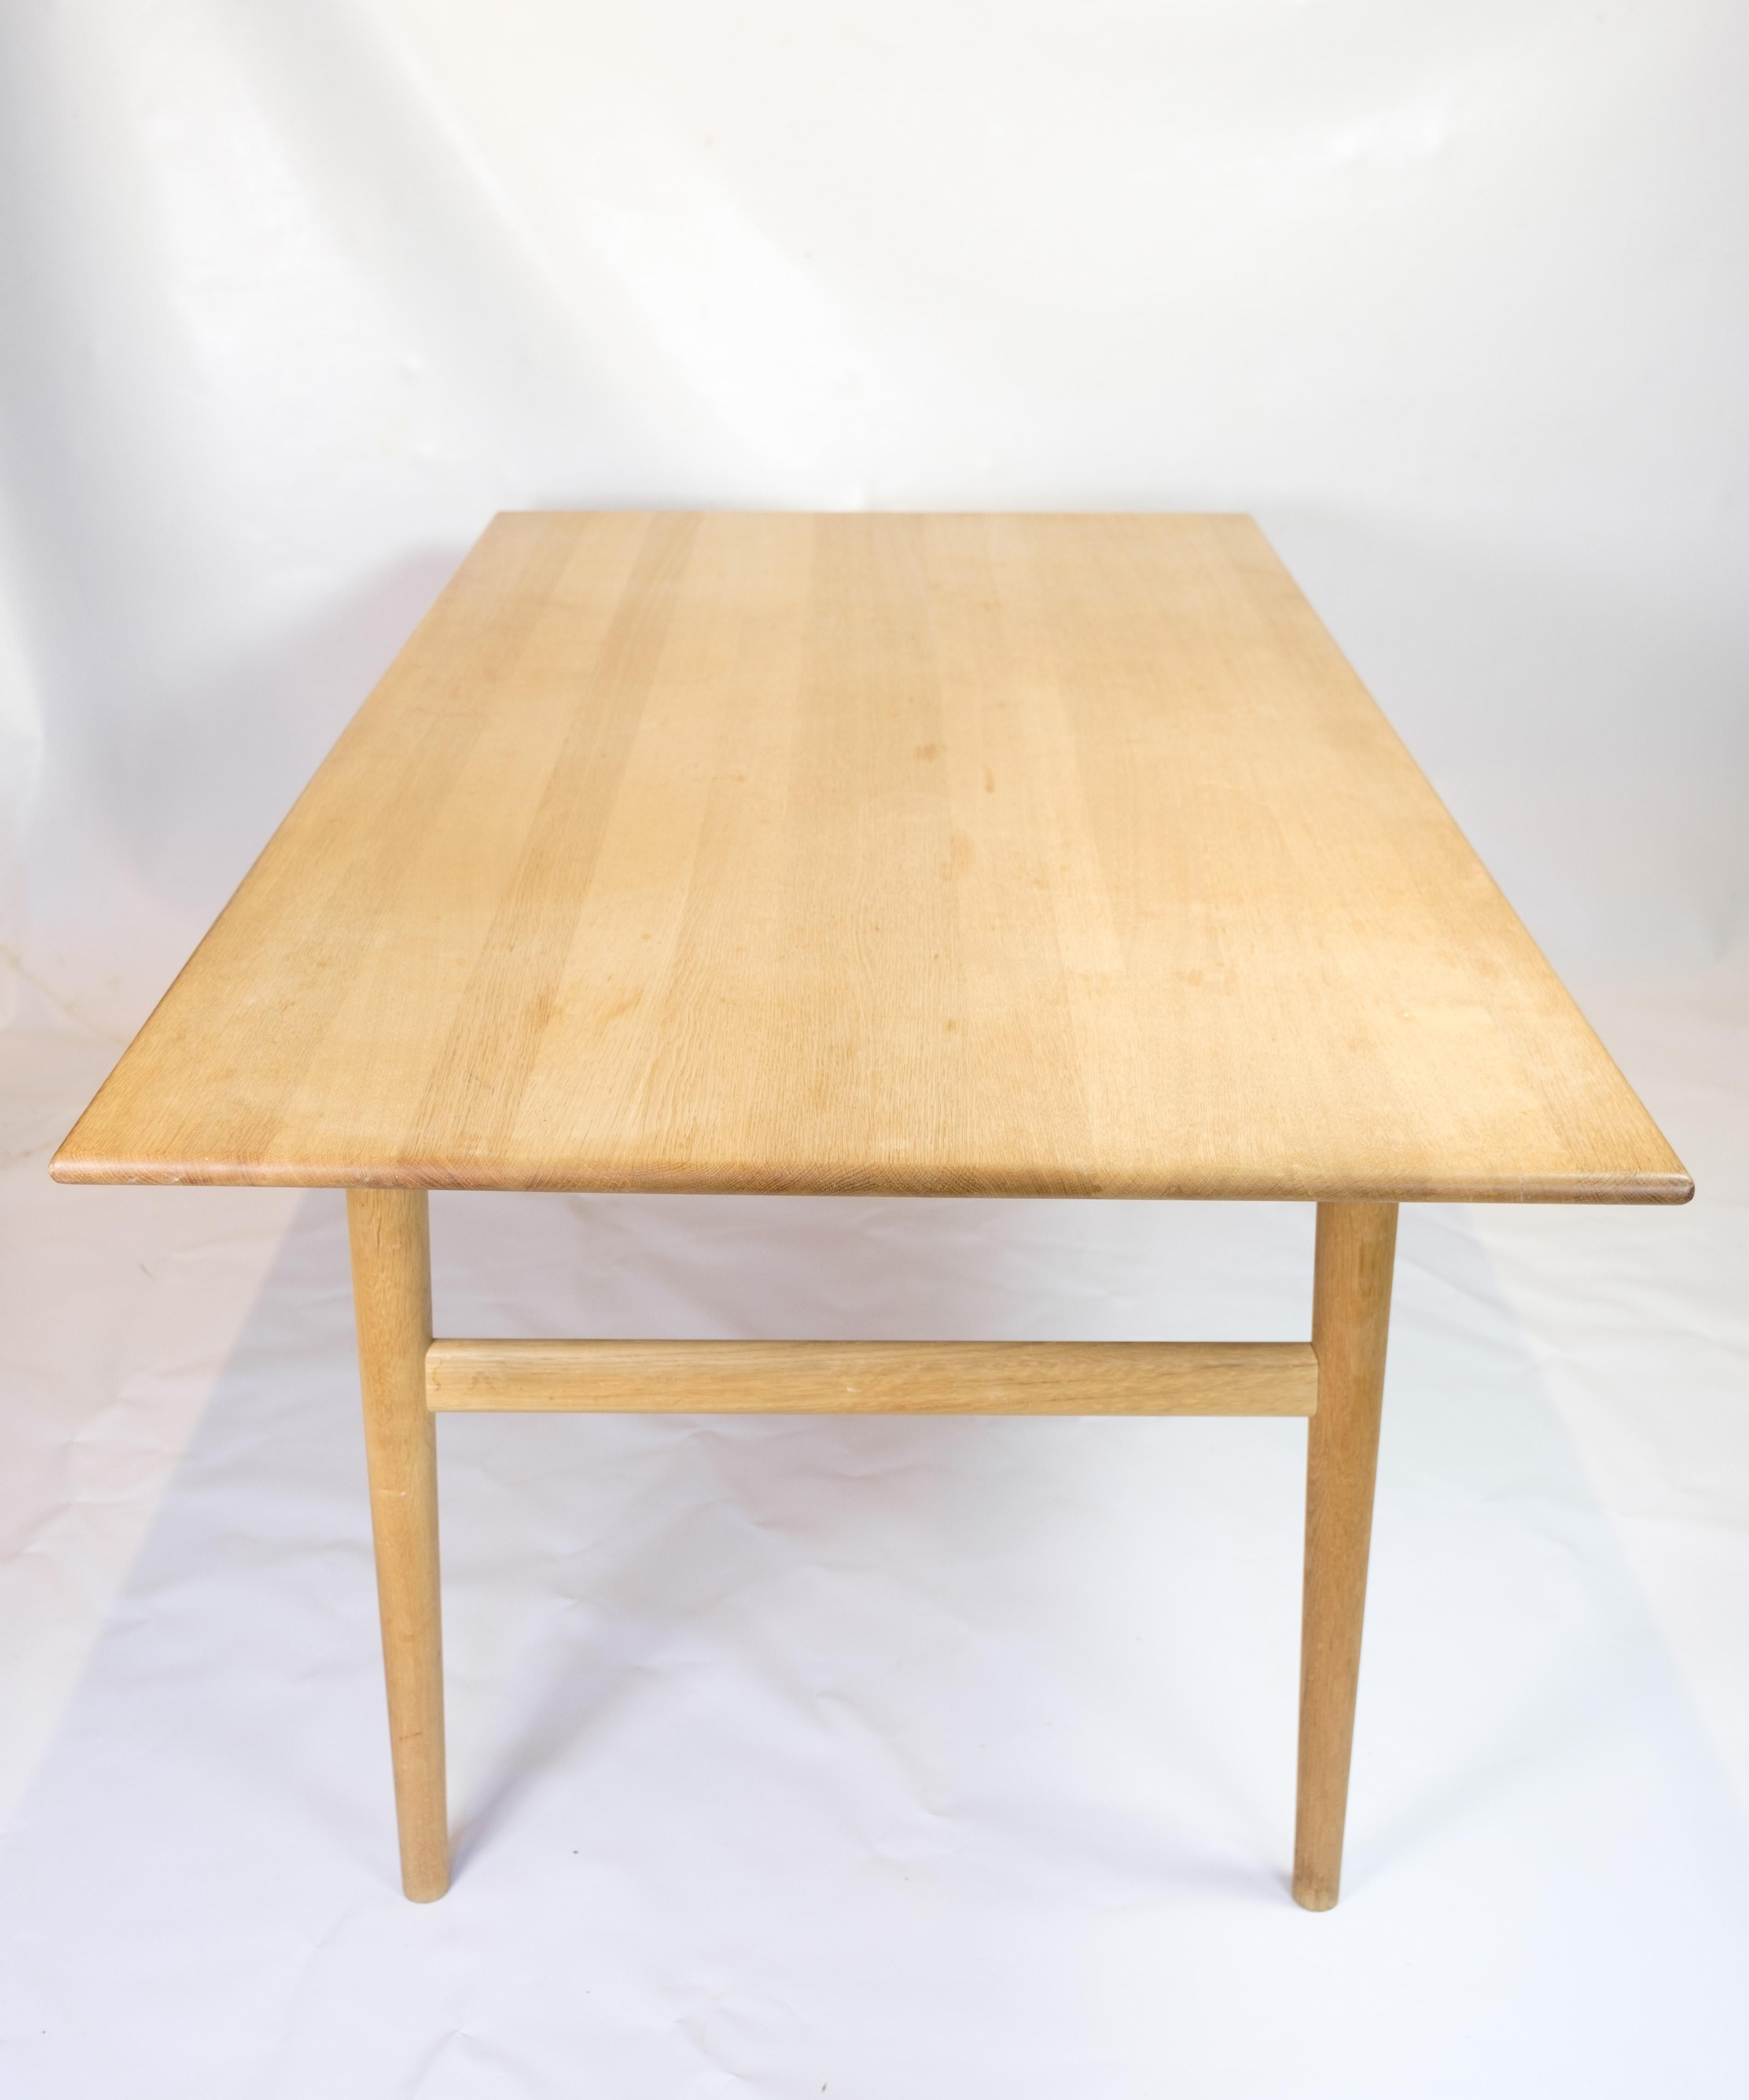 La table de salle à manger CH327 de Carl Hansen & Søn est un meuble élégant et intemporel conçu par le célèbre architecte danois Hans J. Wegner en 1962. Cette table respire la simplicité et la fonctionnalité, caractéristiques de la philosophie de